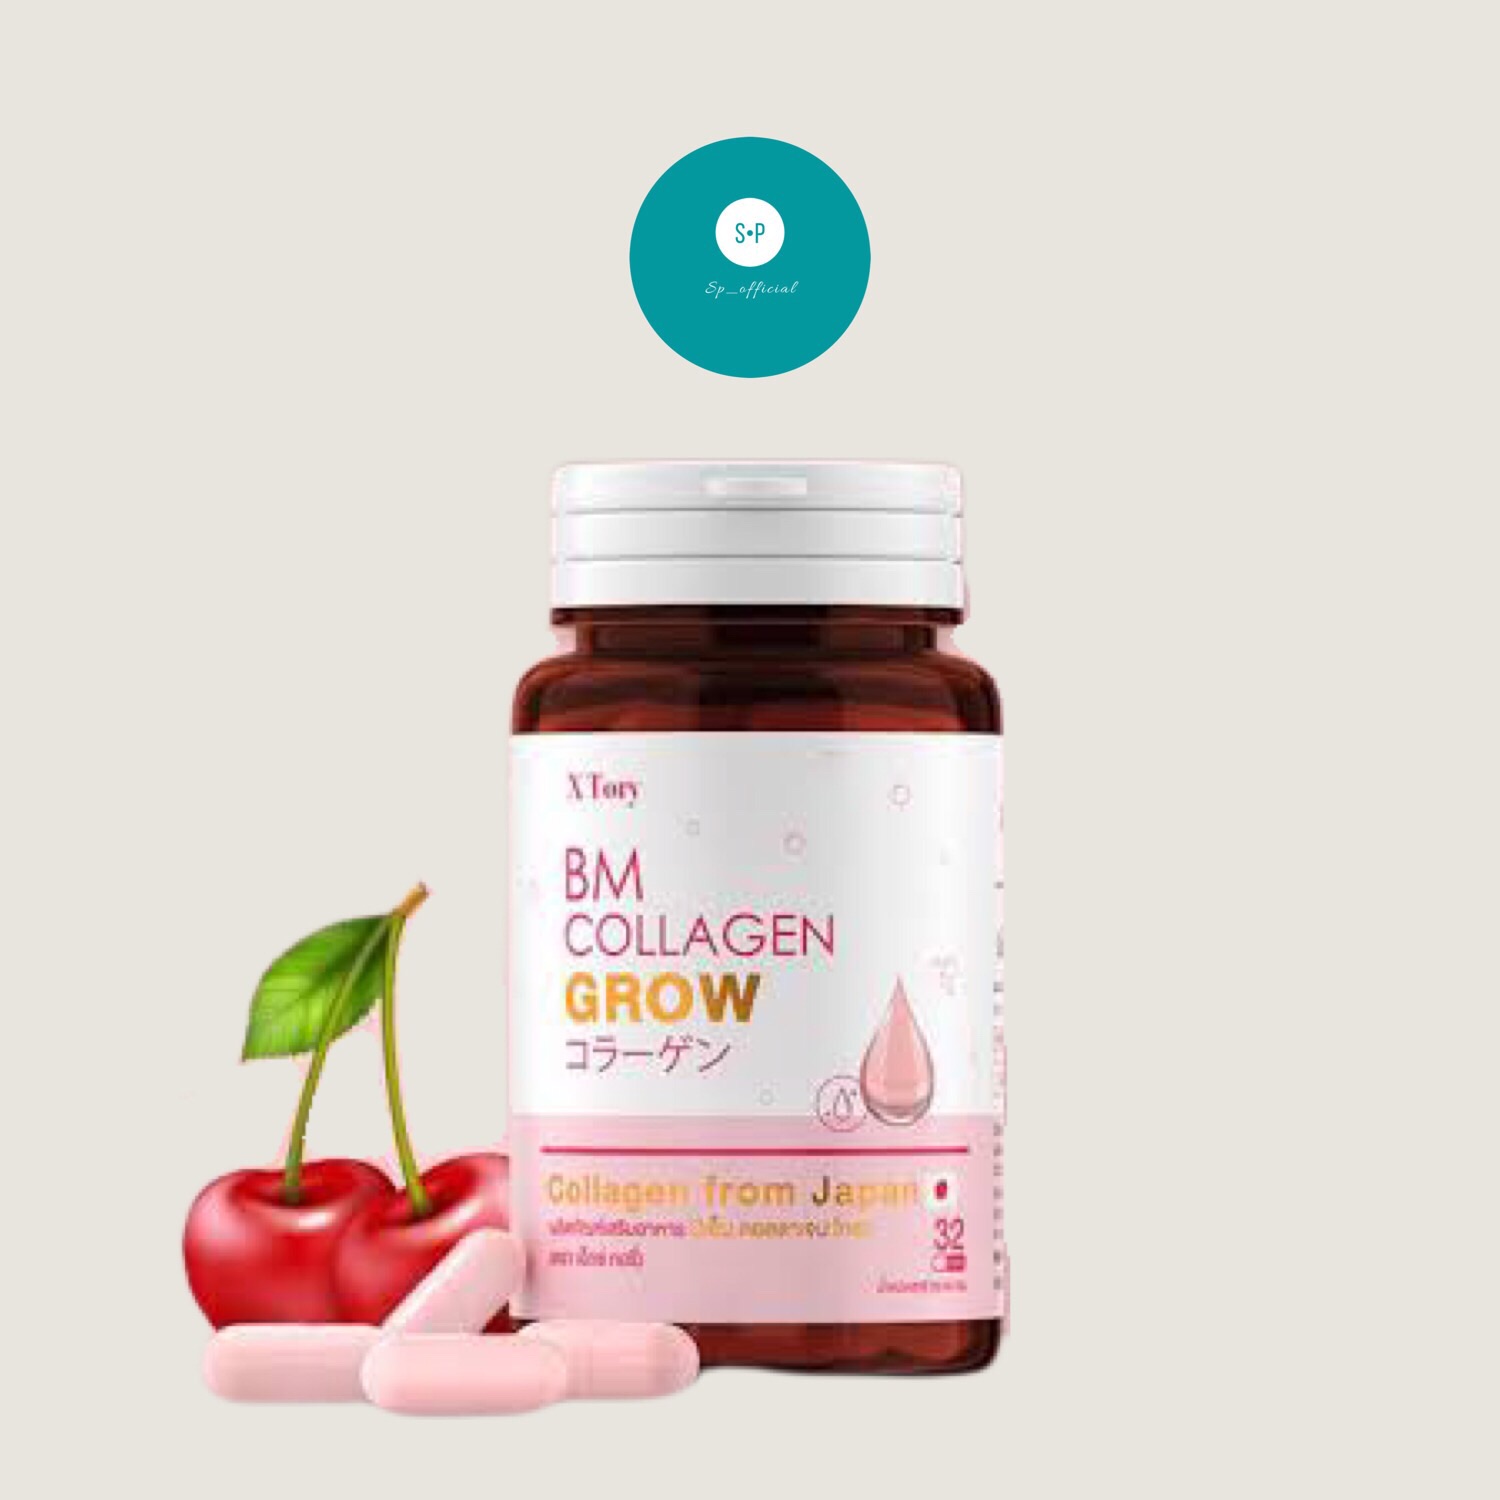 บีเอ็ม คอลลาเจน โกรว BM Collagen Grow ของแท้100%